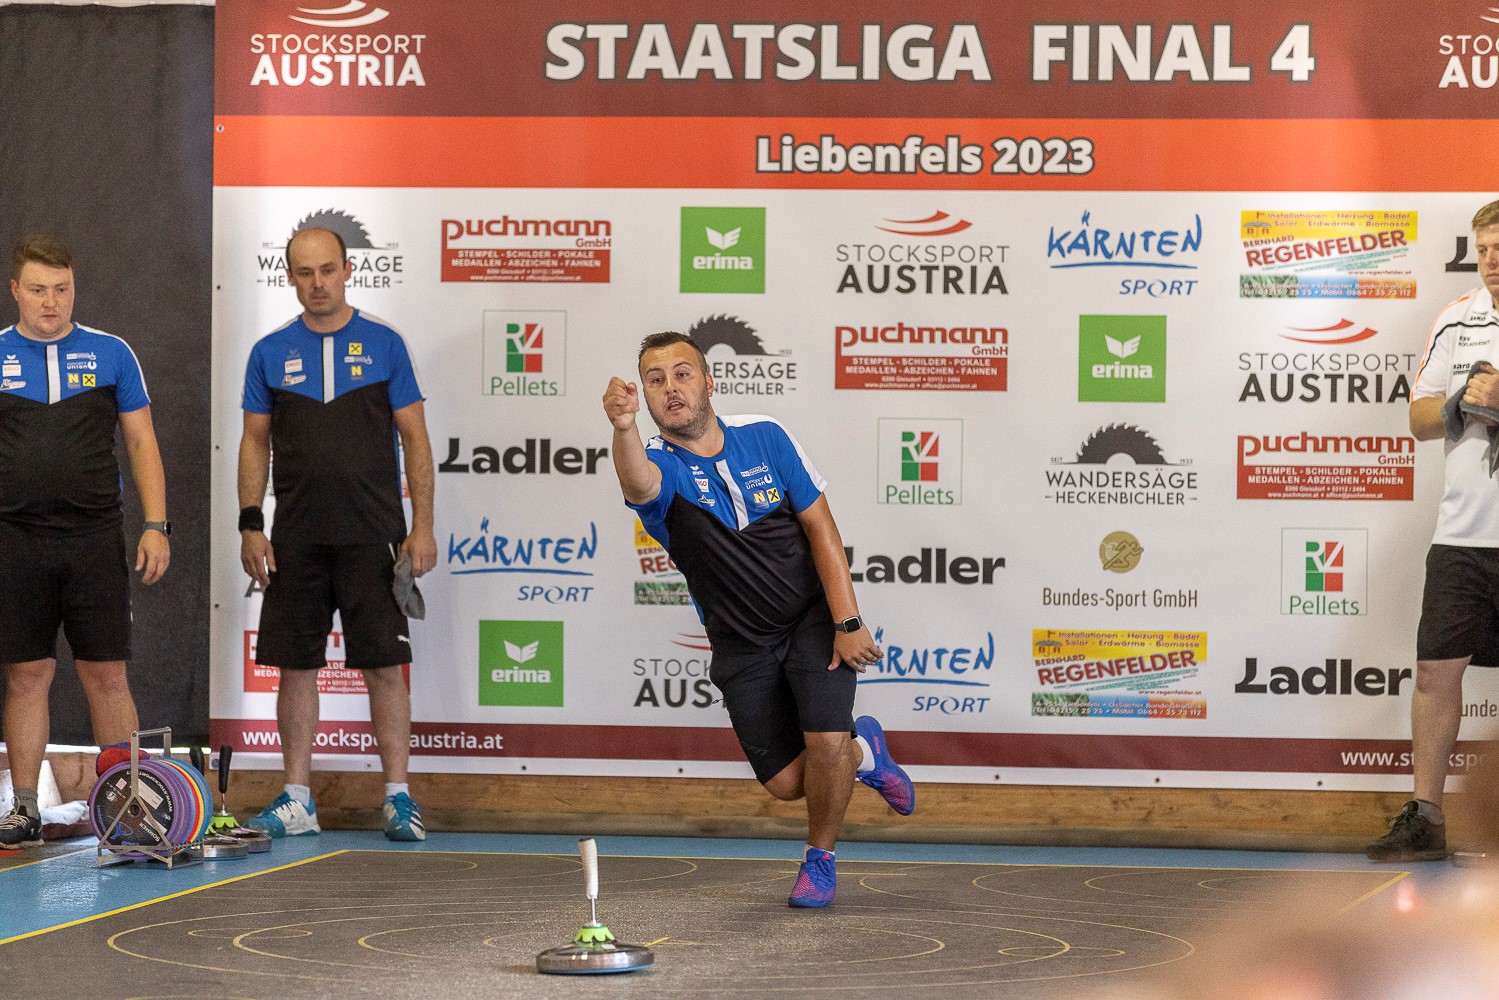 Staatsliga Final 4